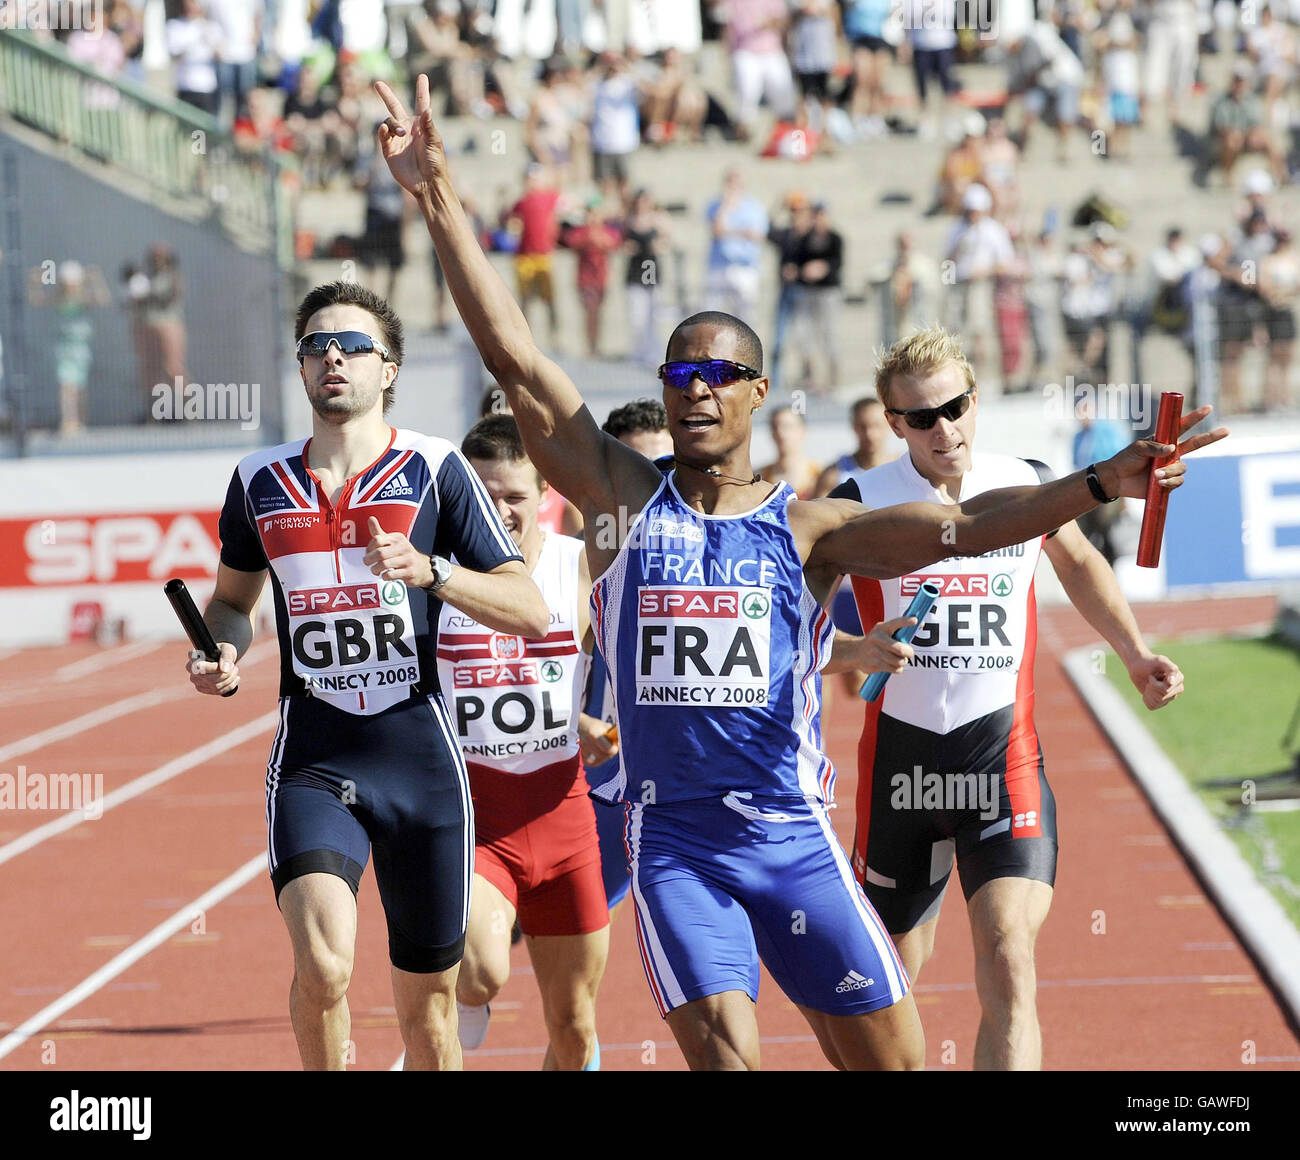 Athlétisme - 2008 Coupe d'Europe Spar - Jour deux - Annecy Banque D'Images